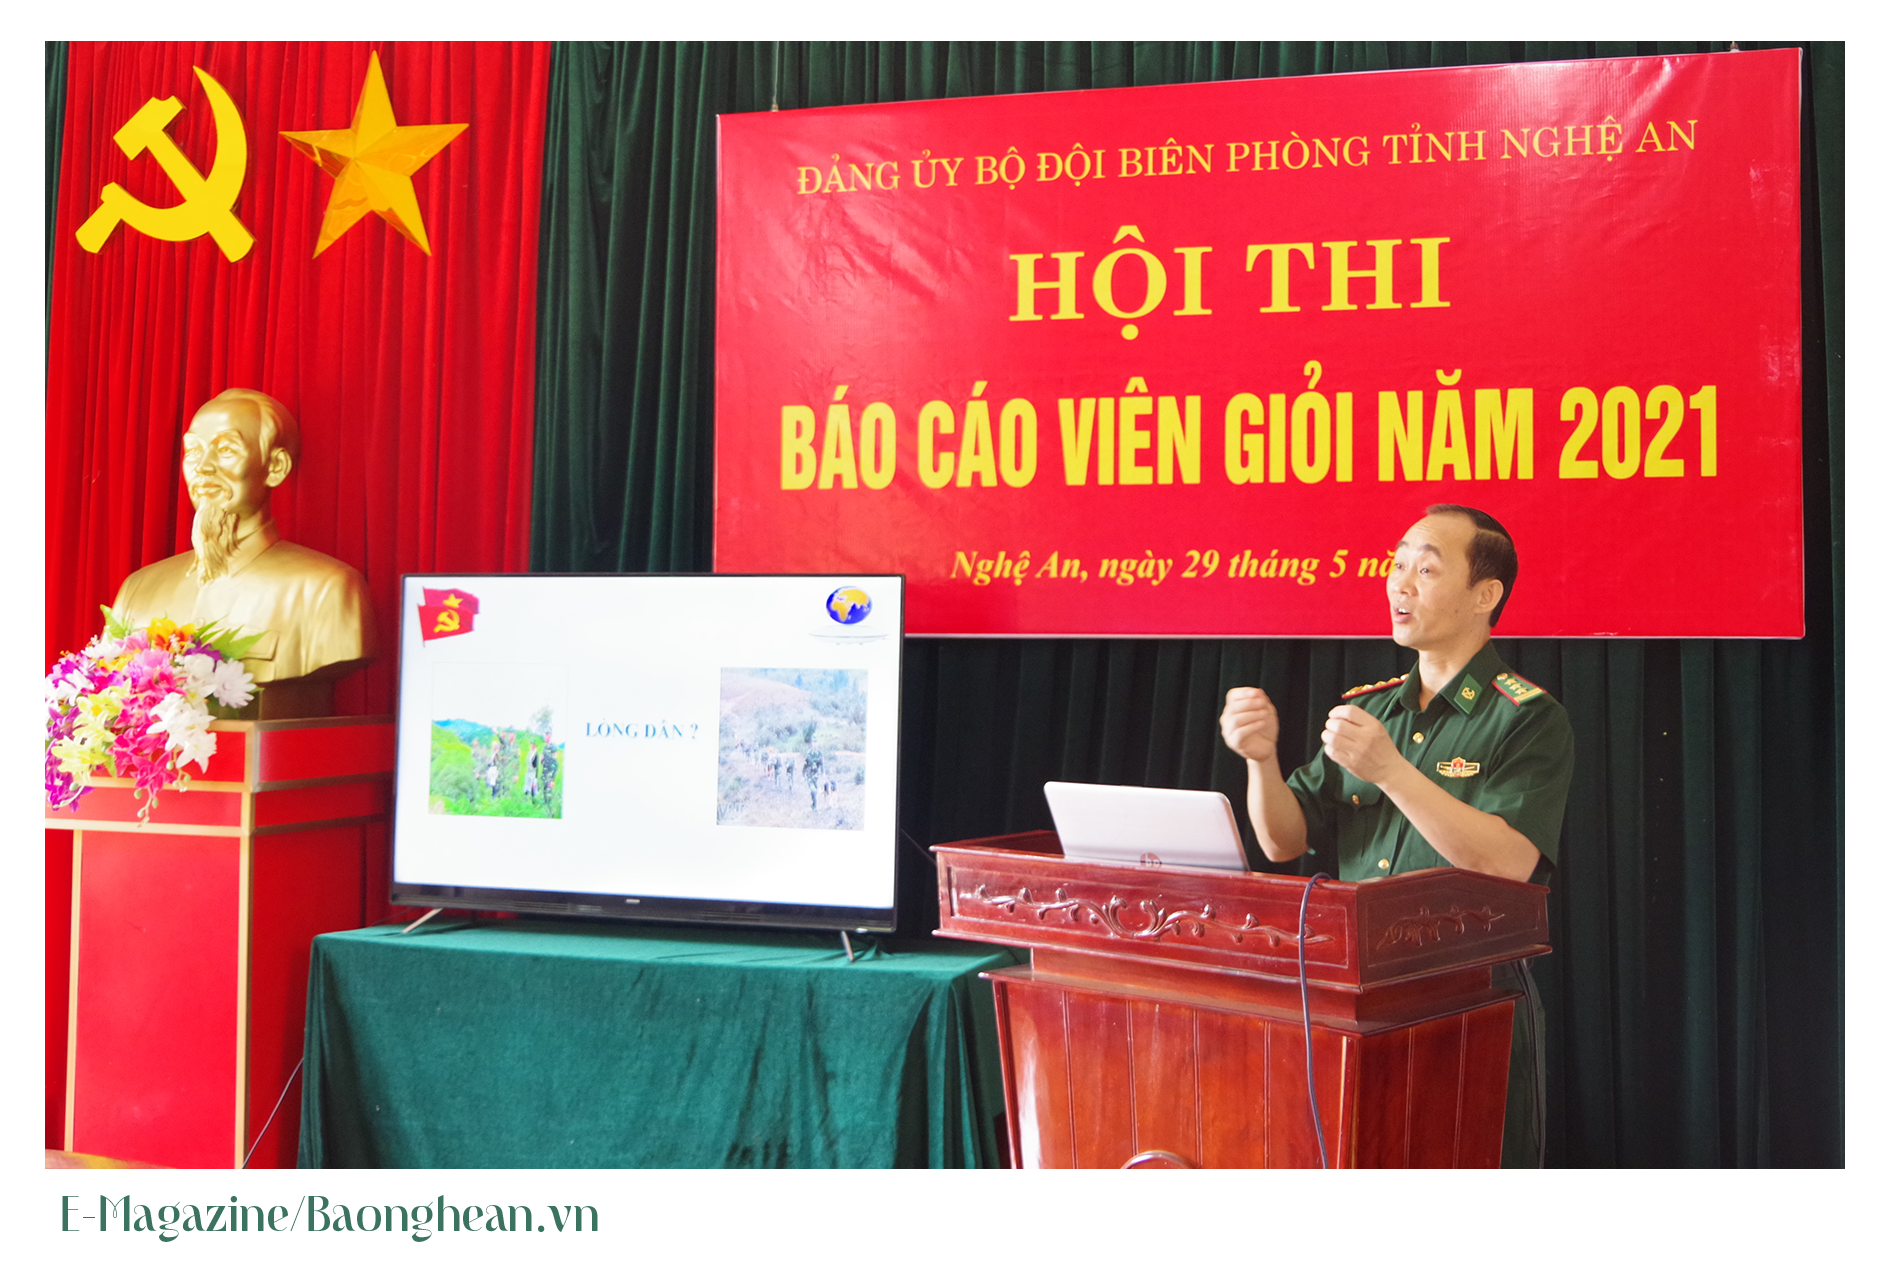 Thượng tá Trần Quang Trung tại hội thi báo cáo viên giỏi năm 2021 do BĐBP Nghệ An tổ chức. Ảnh: Phương Linh